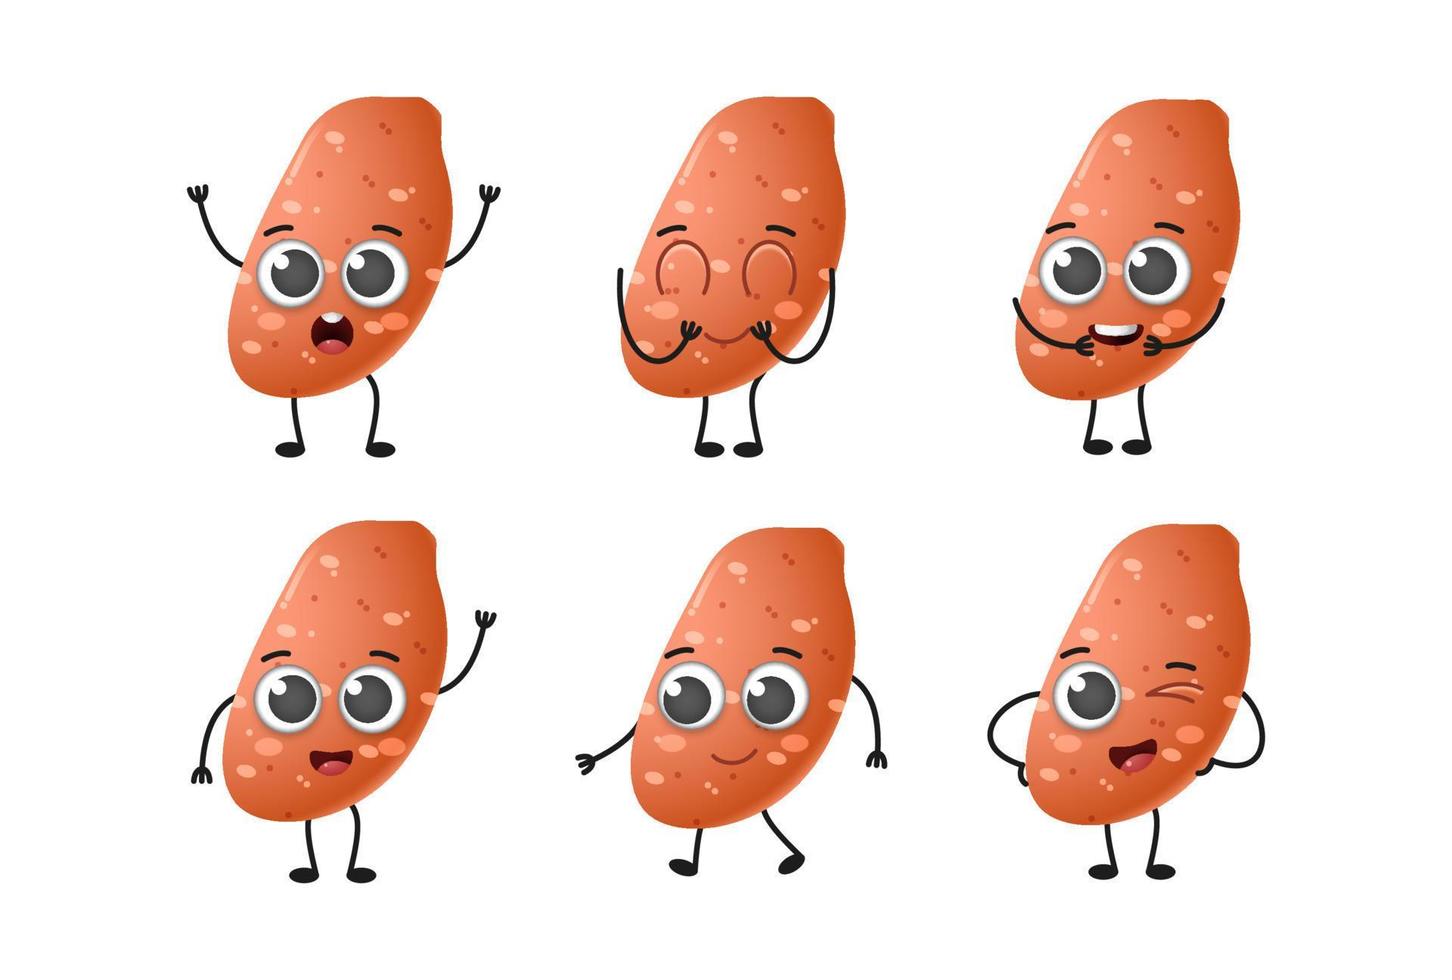 ensemble de jeu de caractères vectoriels de légumes de patates douces de dessin animé mignon isolé sur fond blanc vecteur